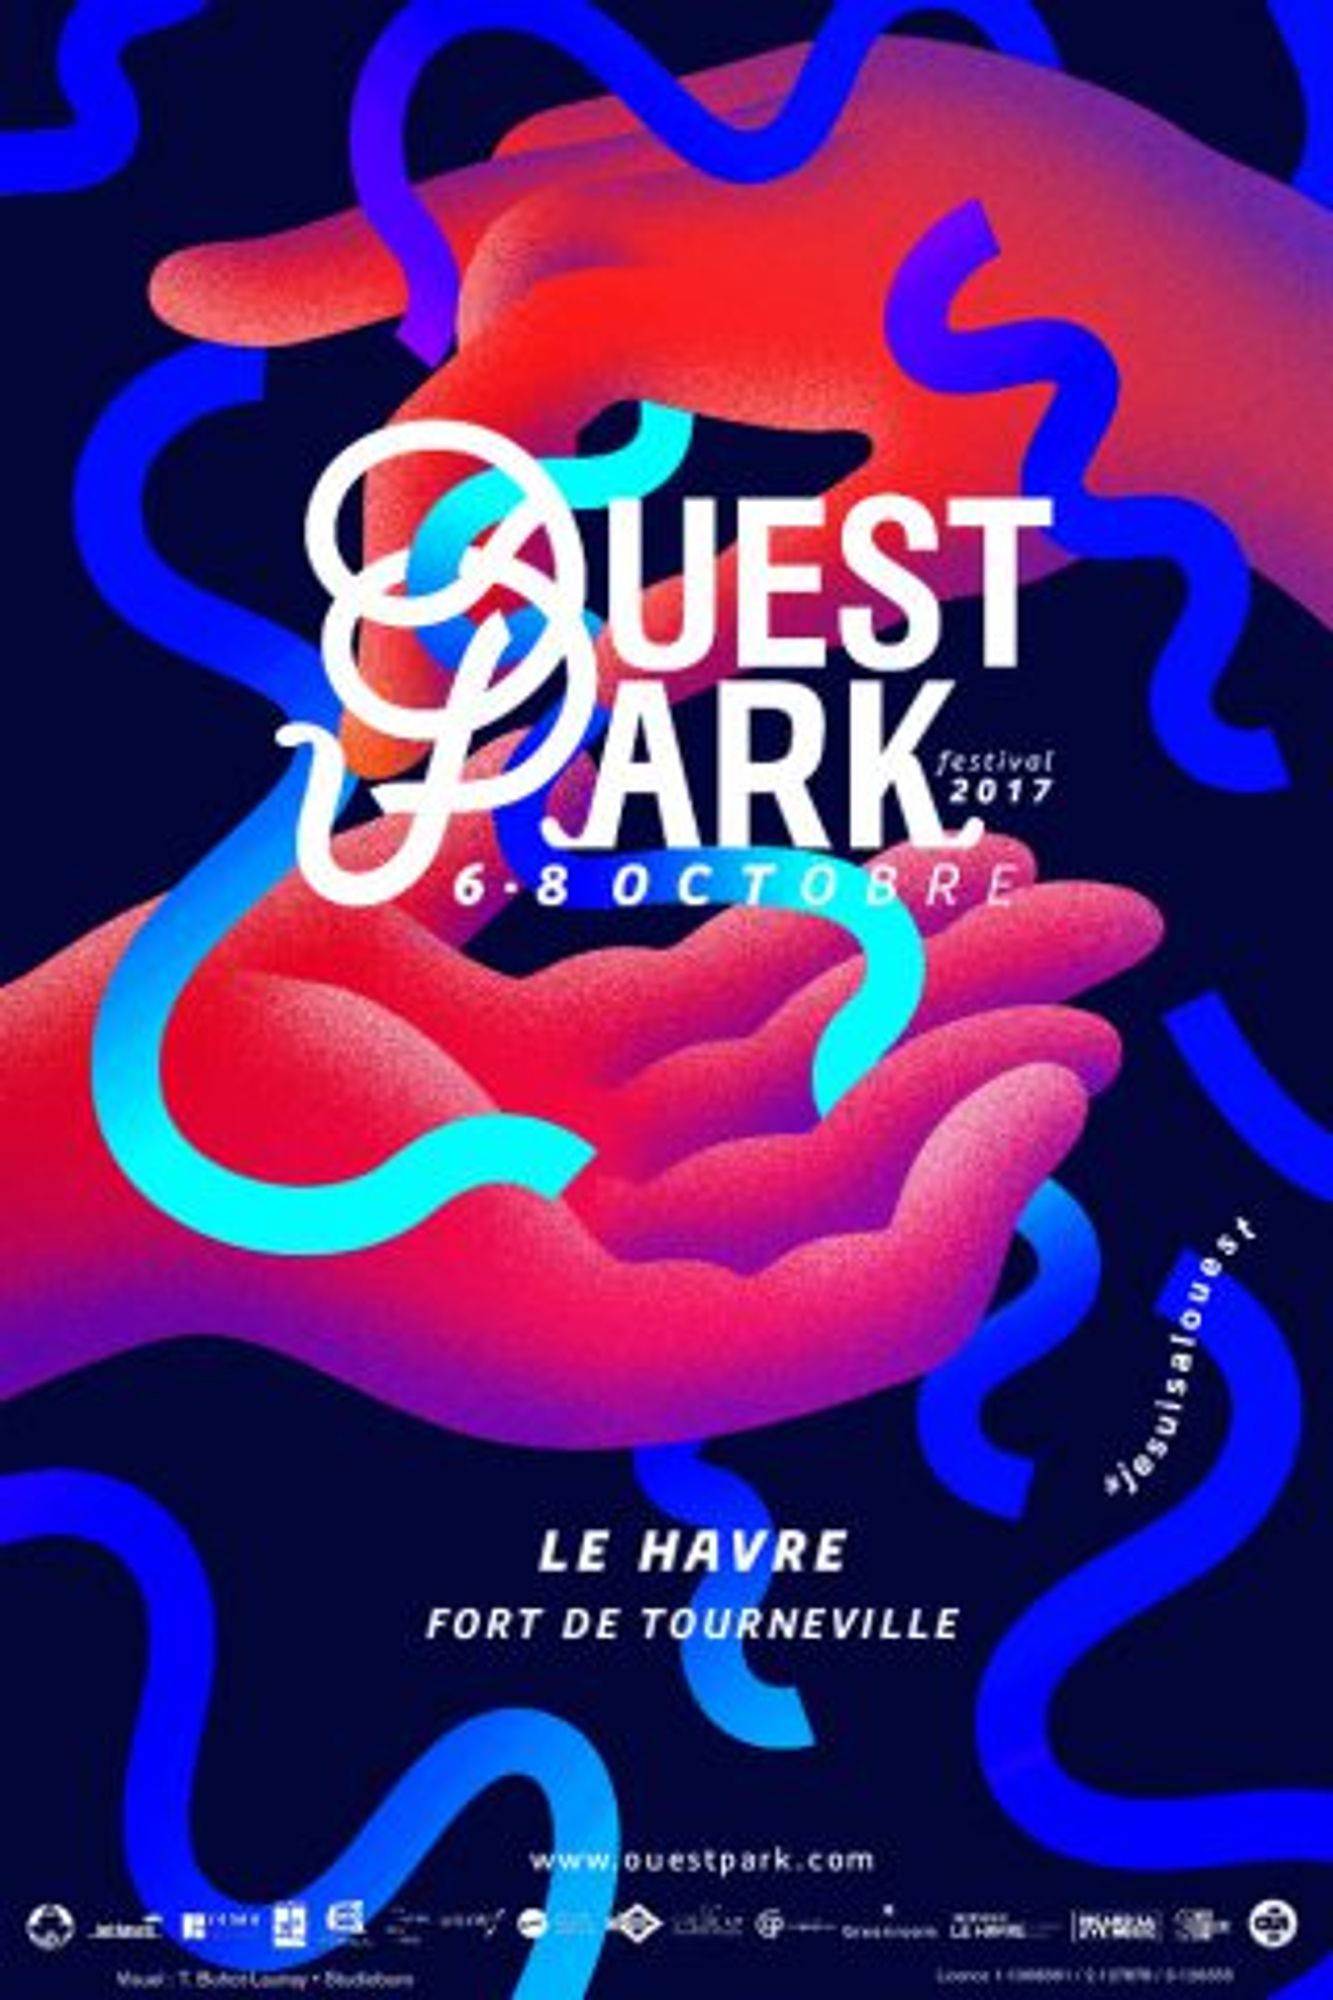 OÜI FM vous invite au festival Ouest Park